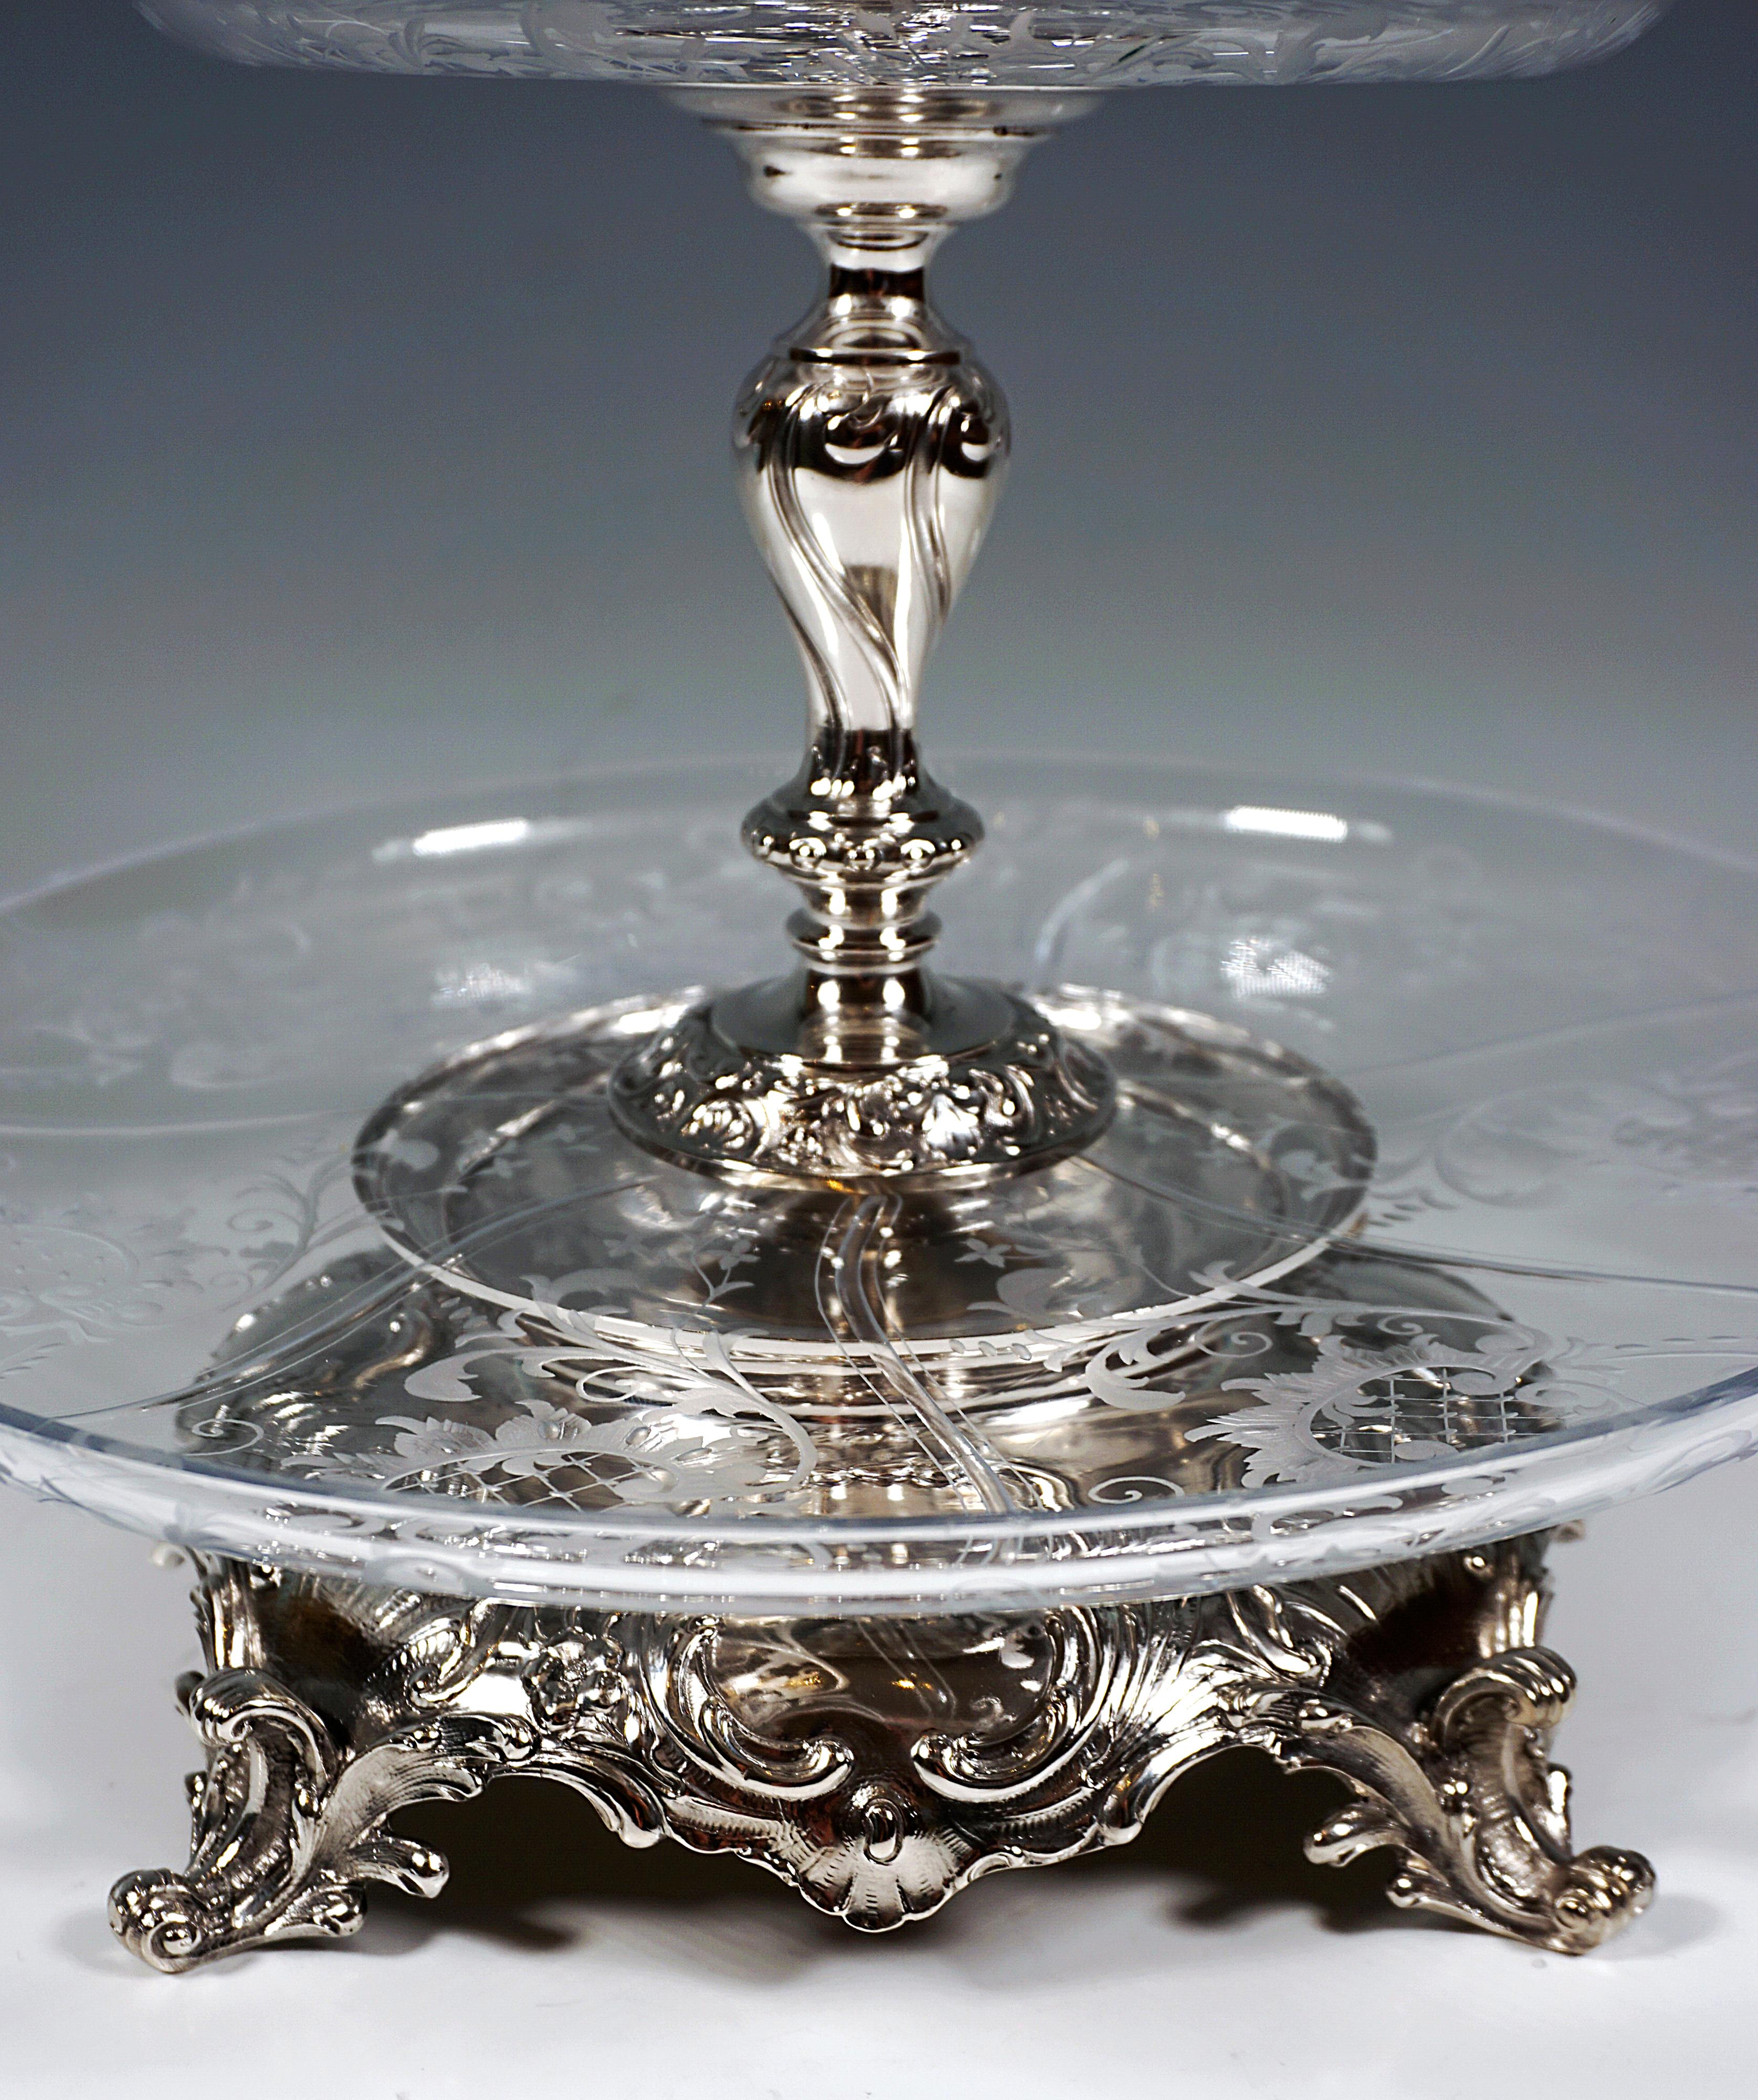 Viennese Silver & Glass Art Nouveau Table Étagère by Würbel & Szokally, Ca. 1900 For Sale 1